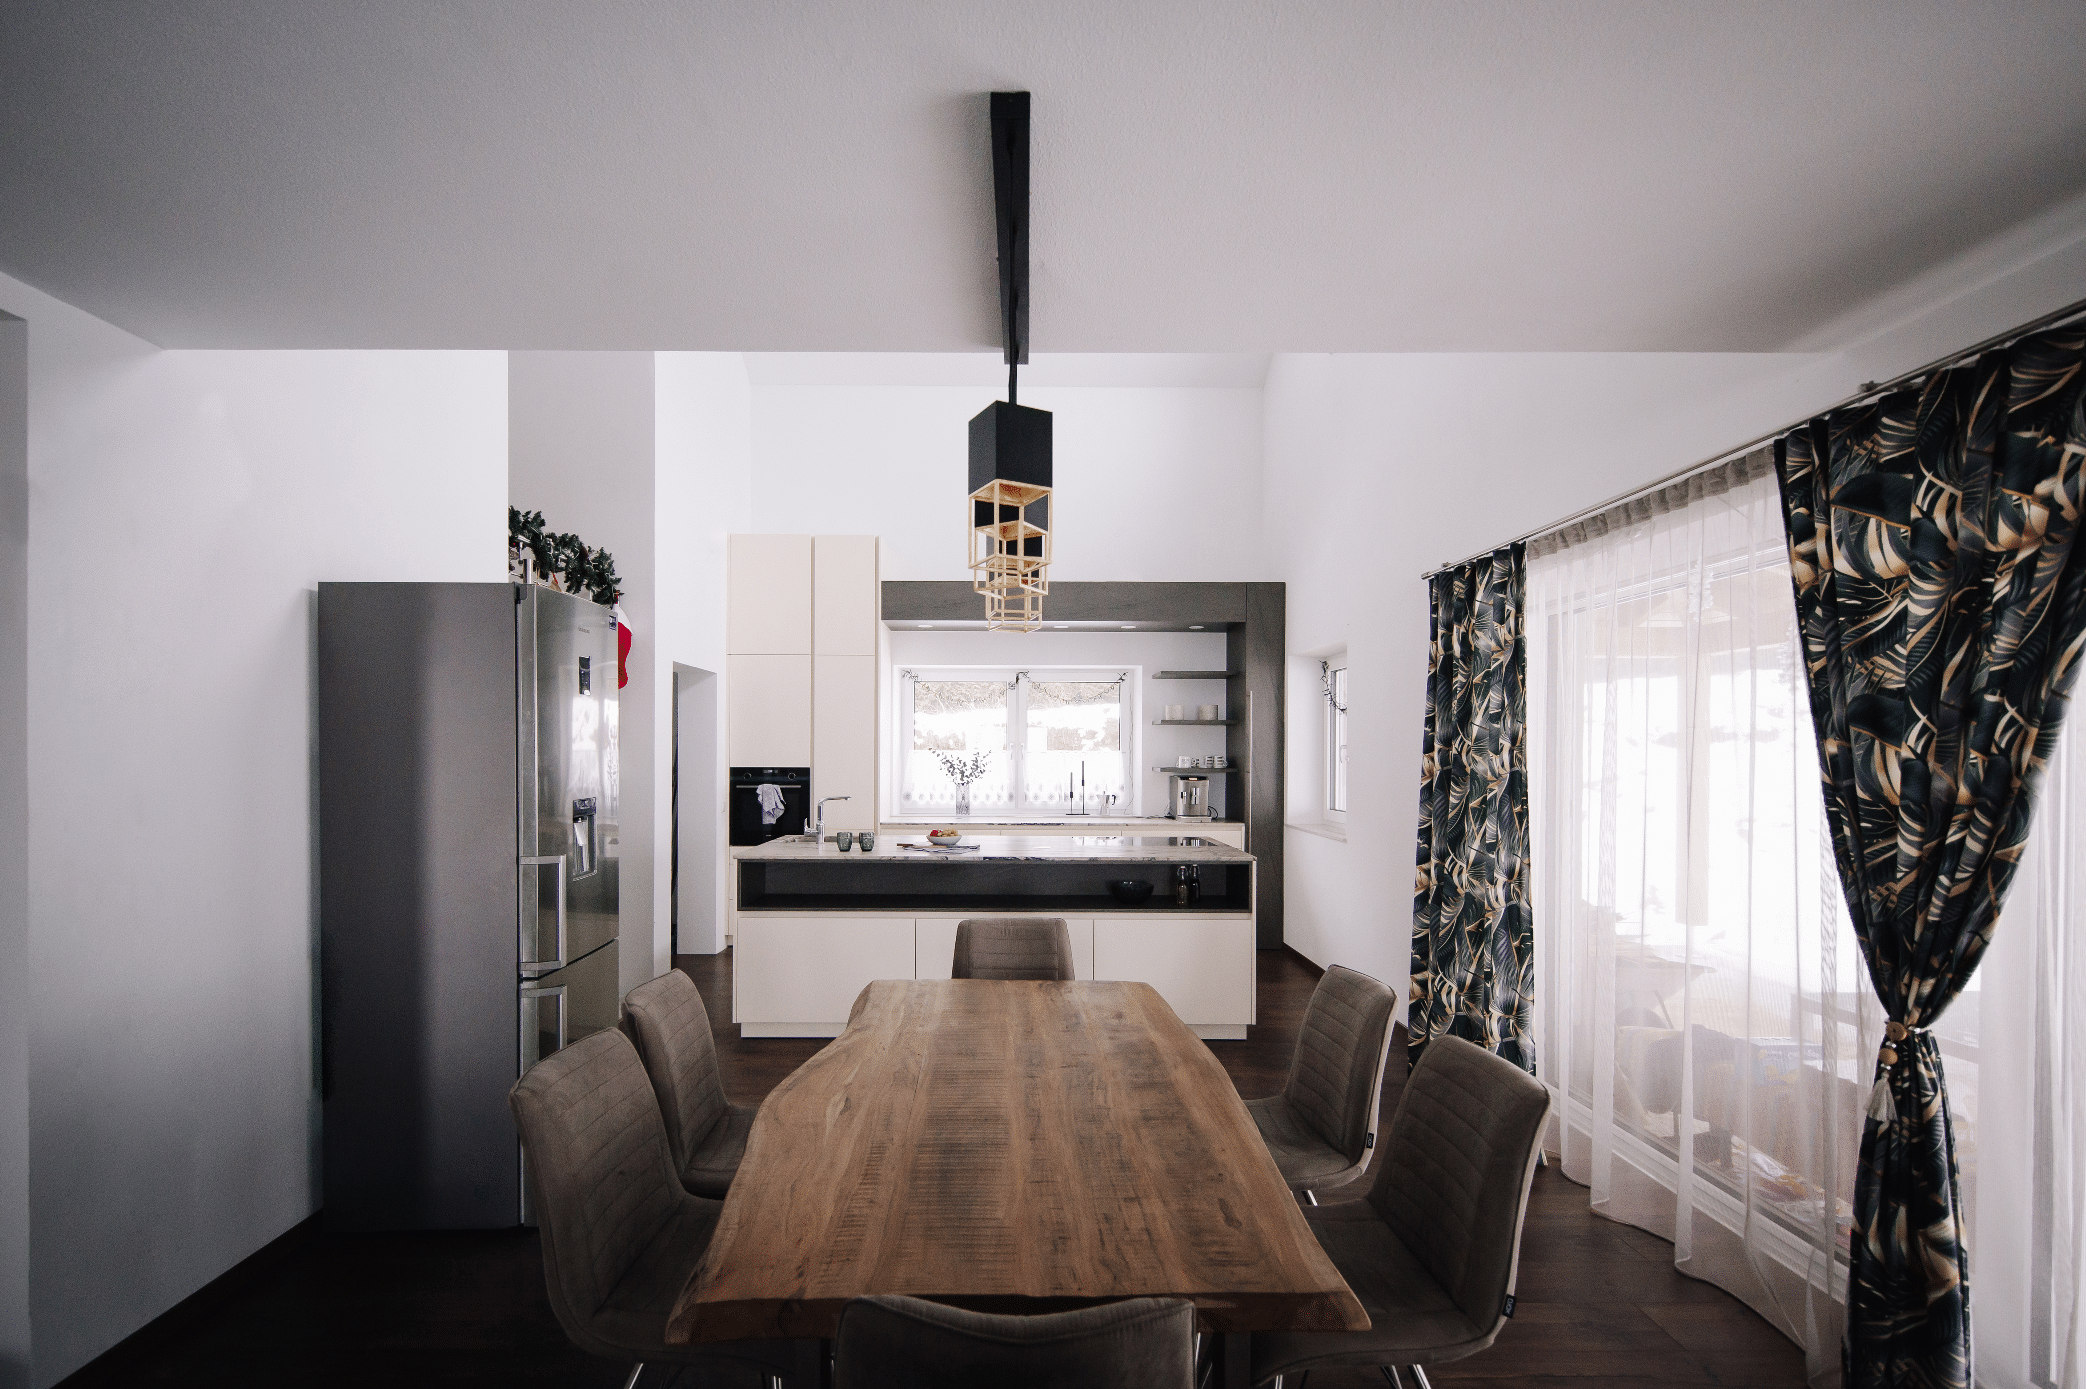 MF Interieur zeigt ein Esszimmer mit großem Holztisch und Lederstühlen in braun und eine kleine Küche mit weissen Fronten und schwarzen Akzenten.